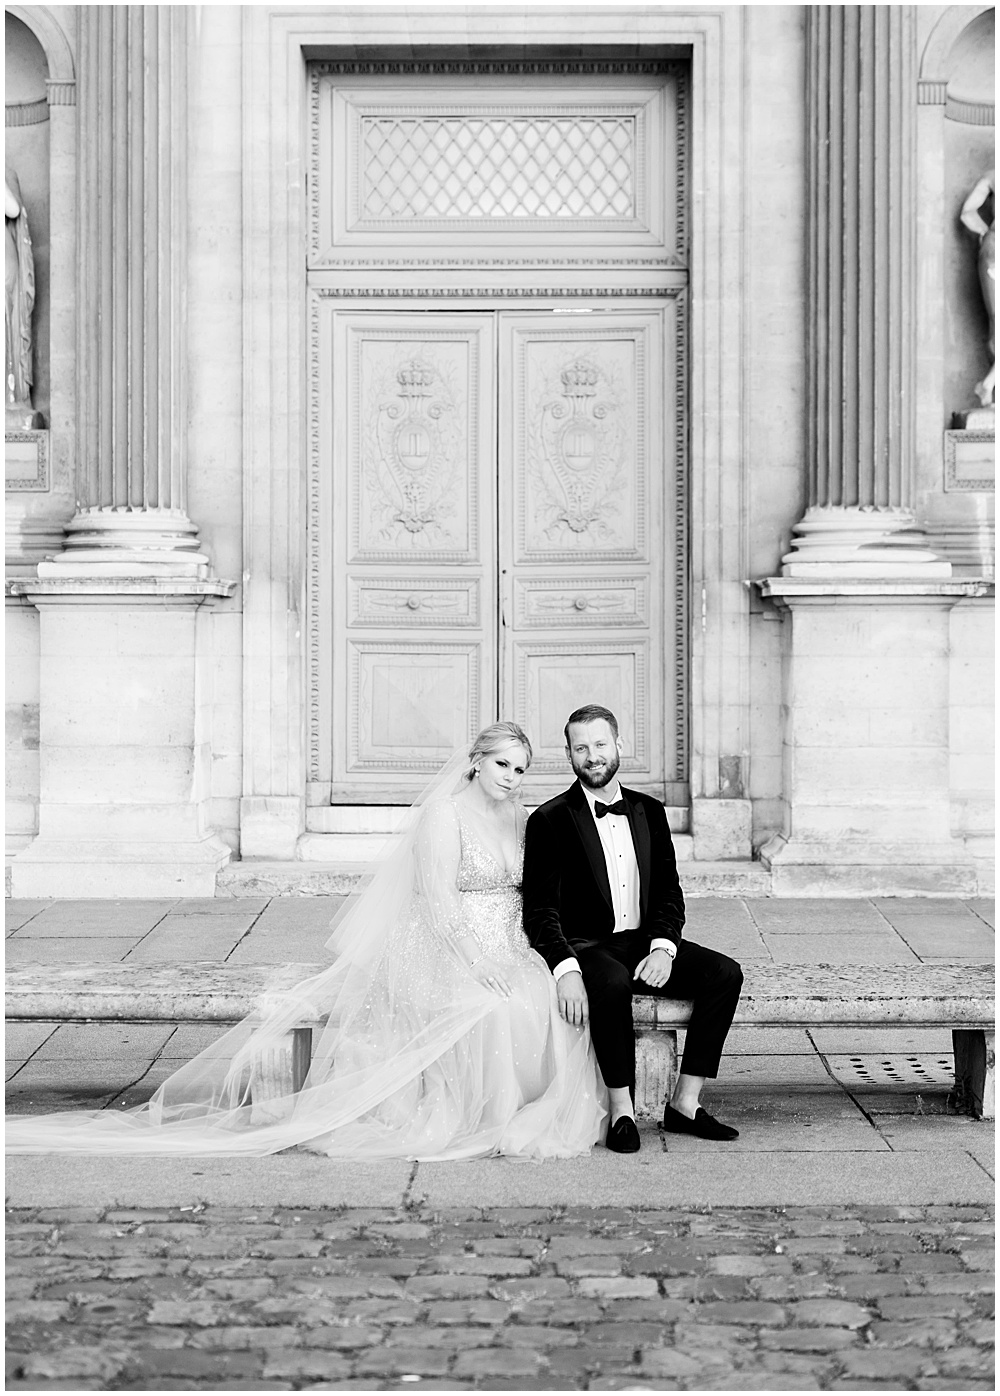 The Louvre Paris, Paris wedding Photographer, destination photographer